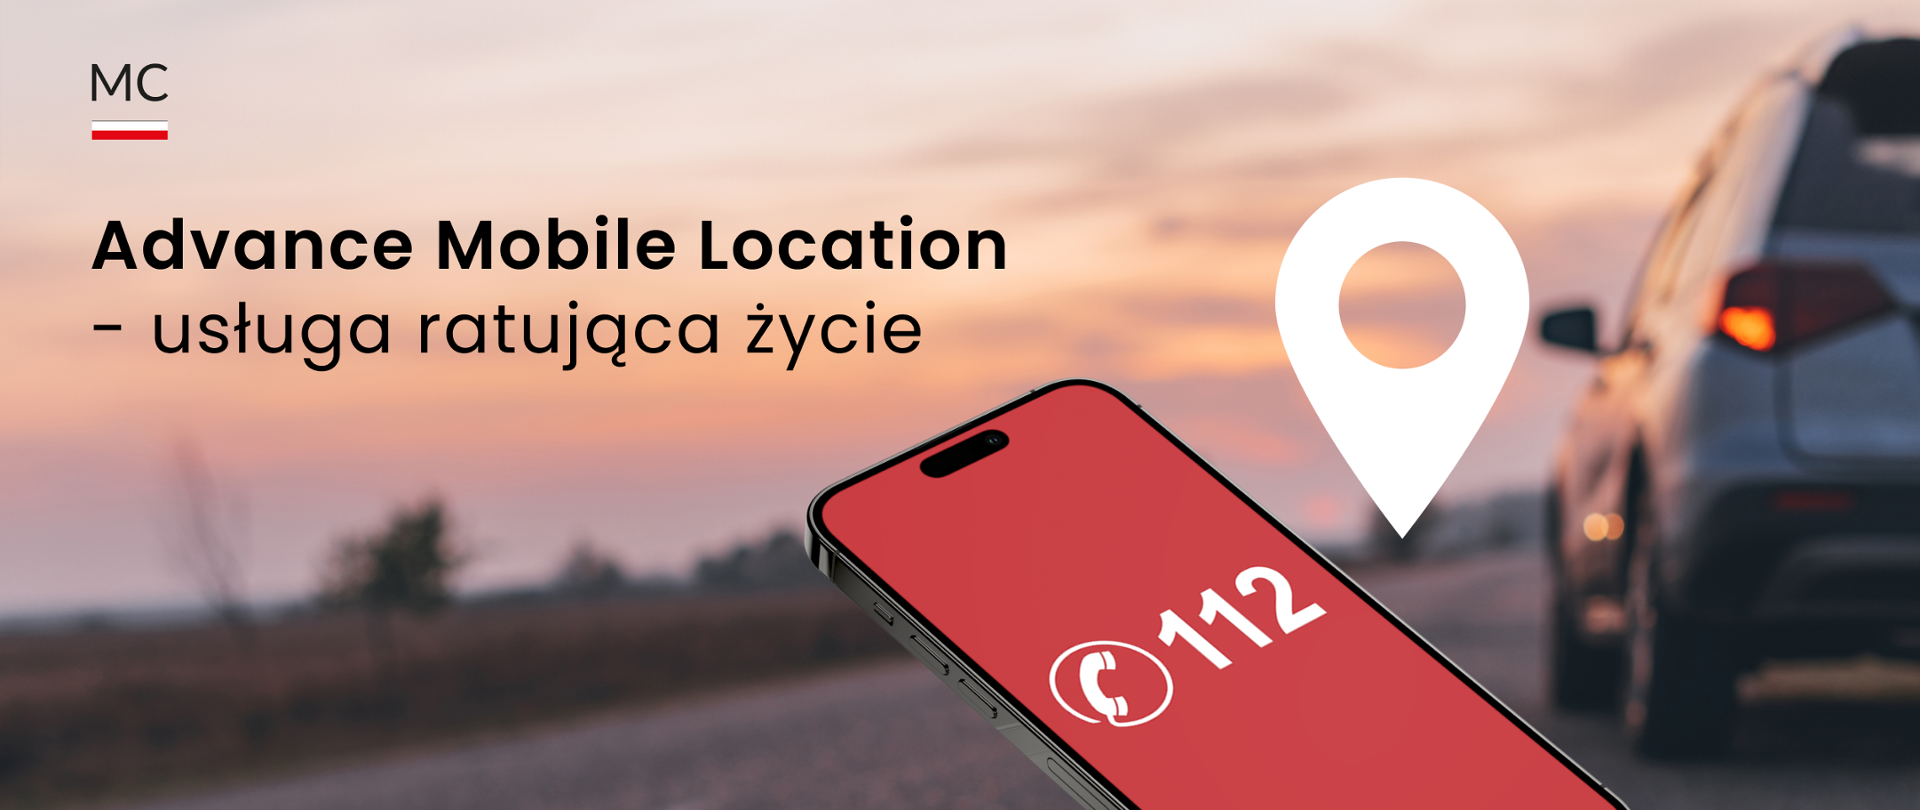 Tekst alternatywny: Advance Mobile Location – usługa ratująca życie, logo Ministerstwa Cyfryzacji, ekran smartfona z numerem 112